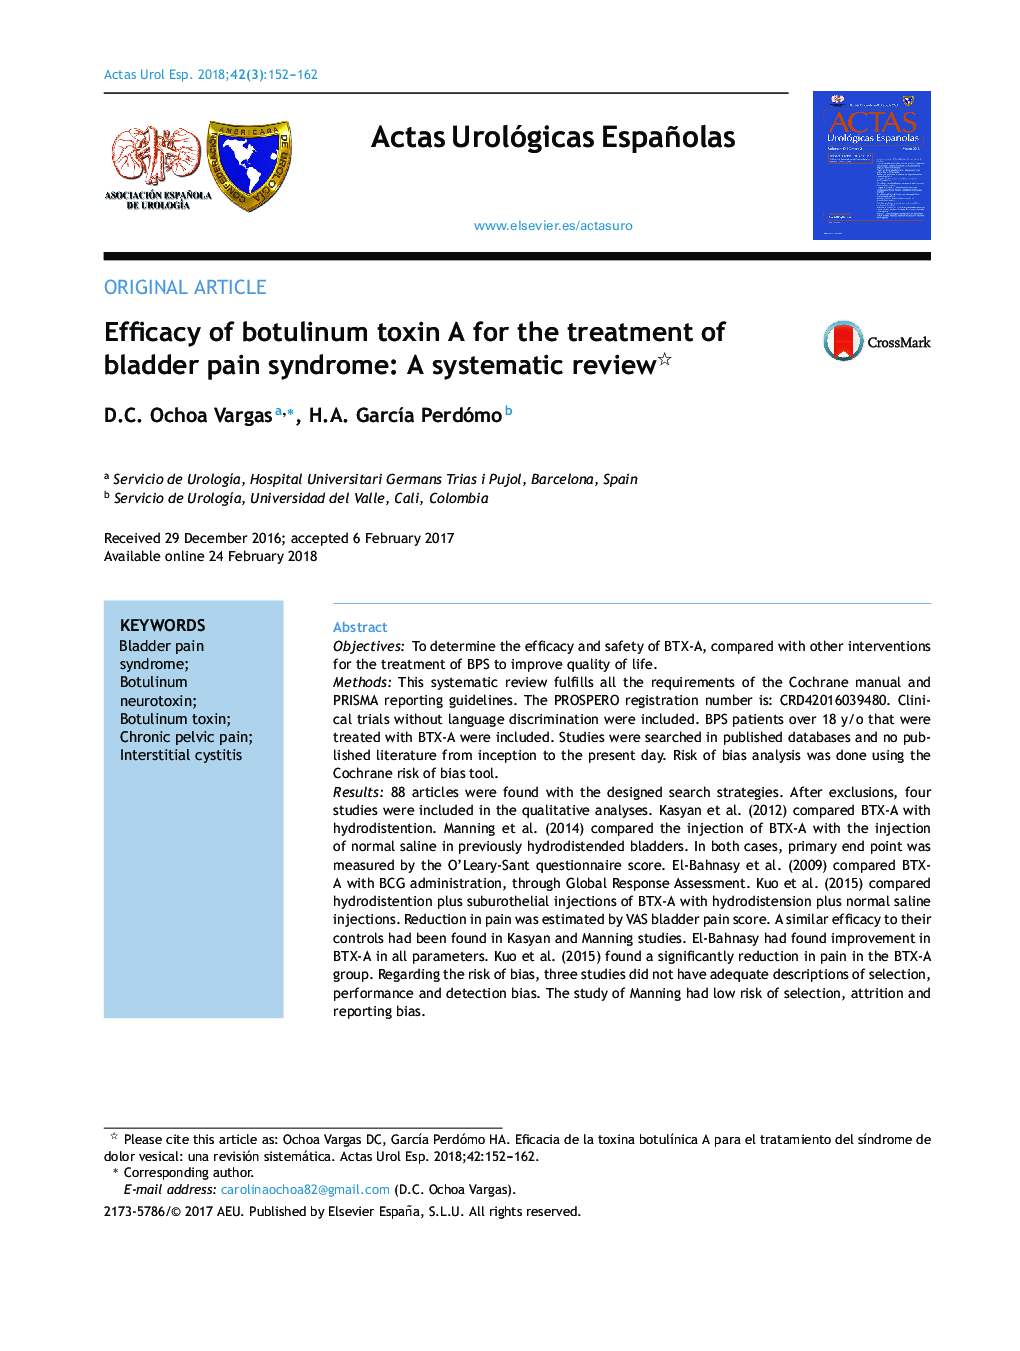 اثربخشی سم بوتولینوم برای درمان سندرم درد مثانه: بررسی سیستماتیک 